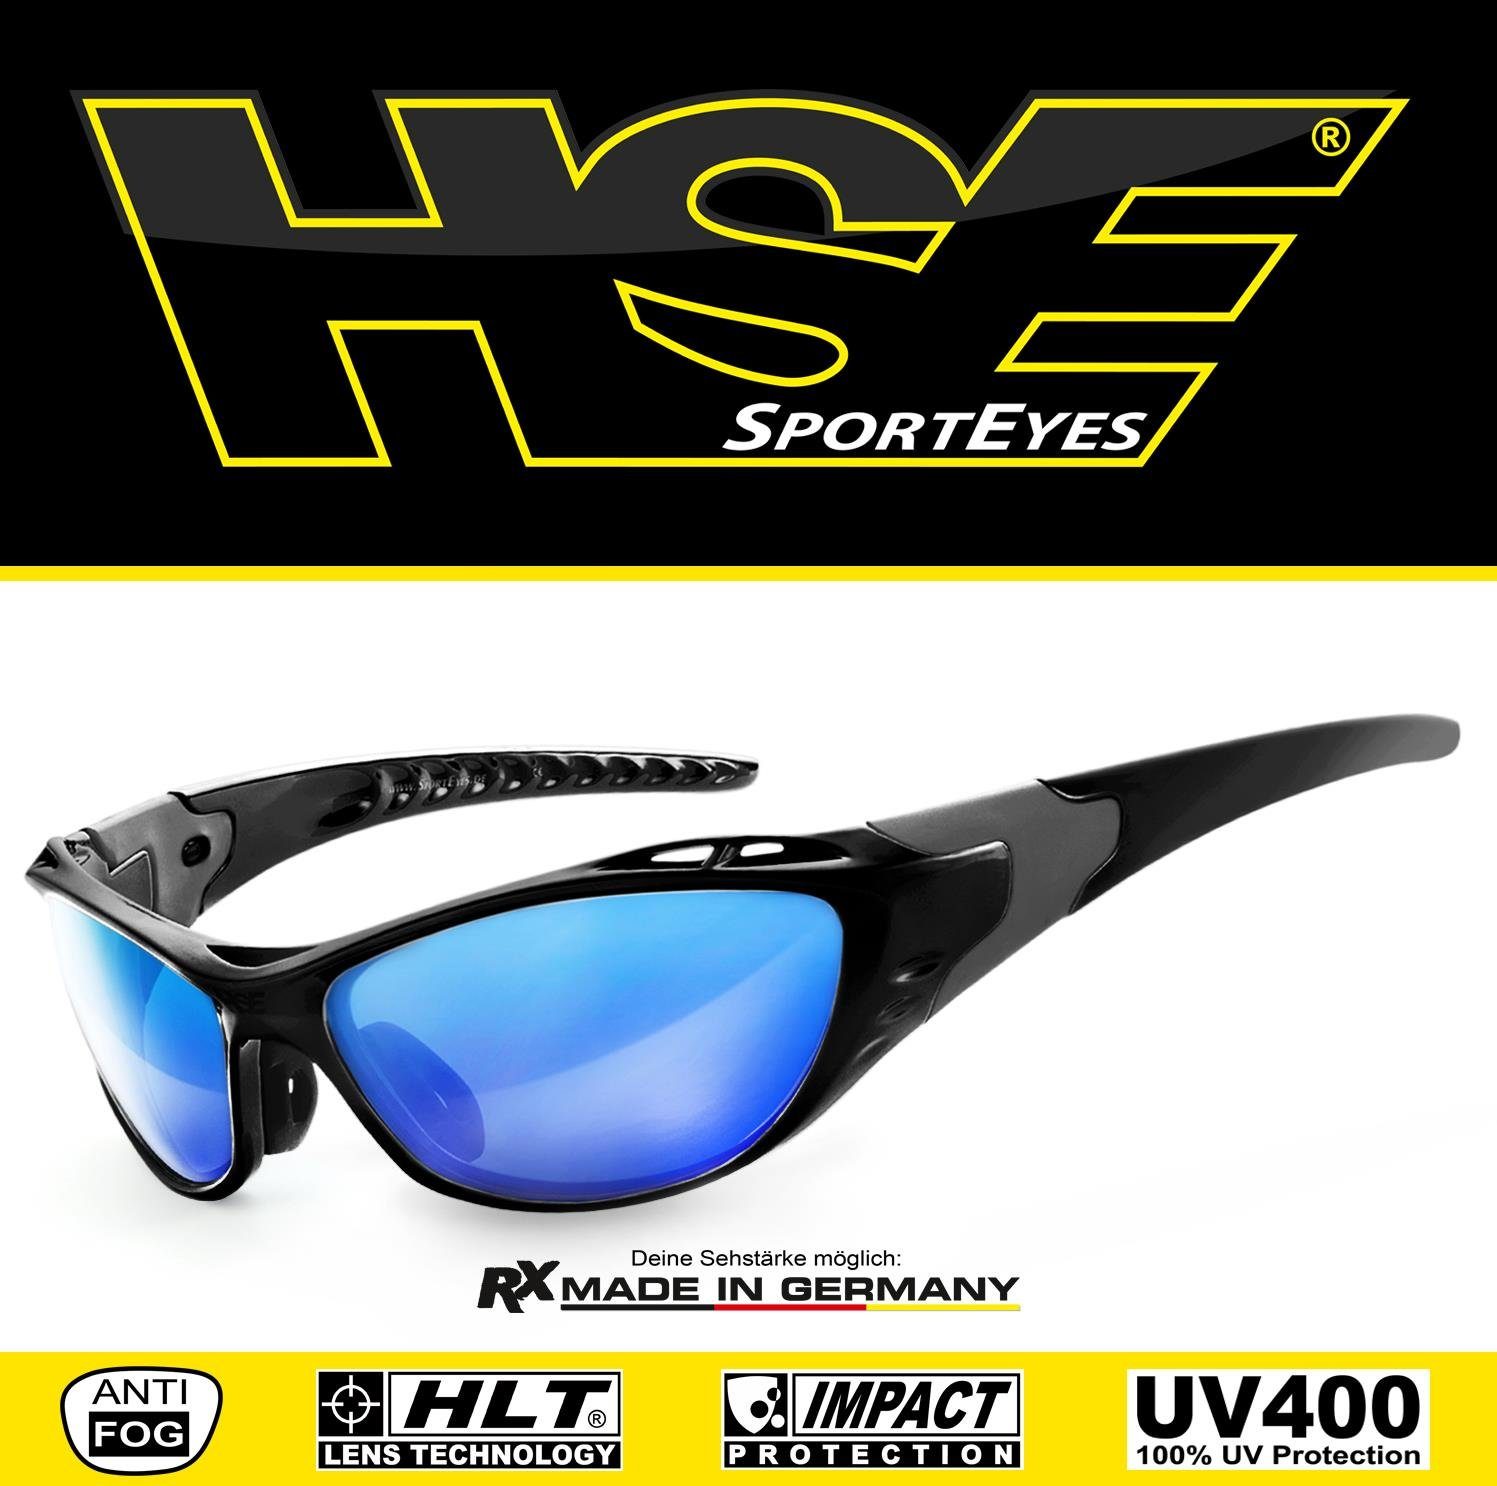 HSE - SportEyes Sportbrille X-SIDE durch Steinschlagbeständig 2.0, Kunststoff-Sicherheitsglas